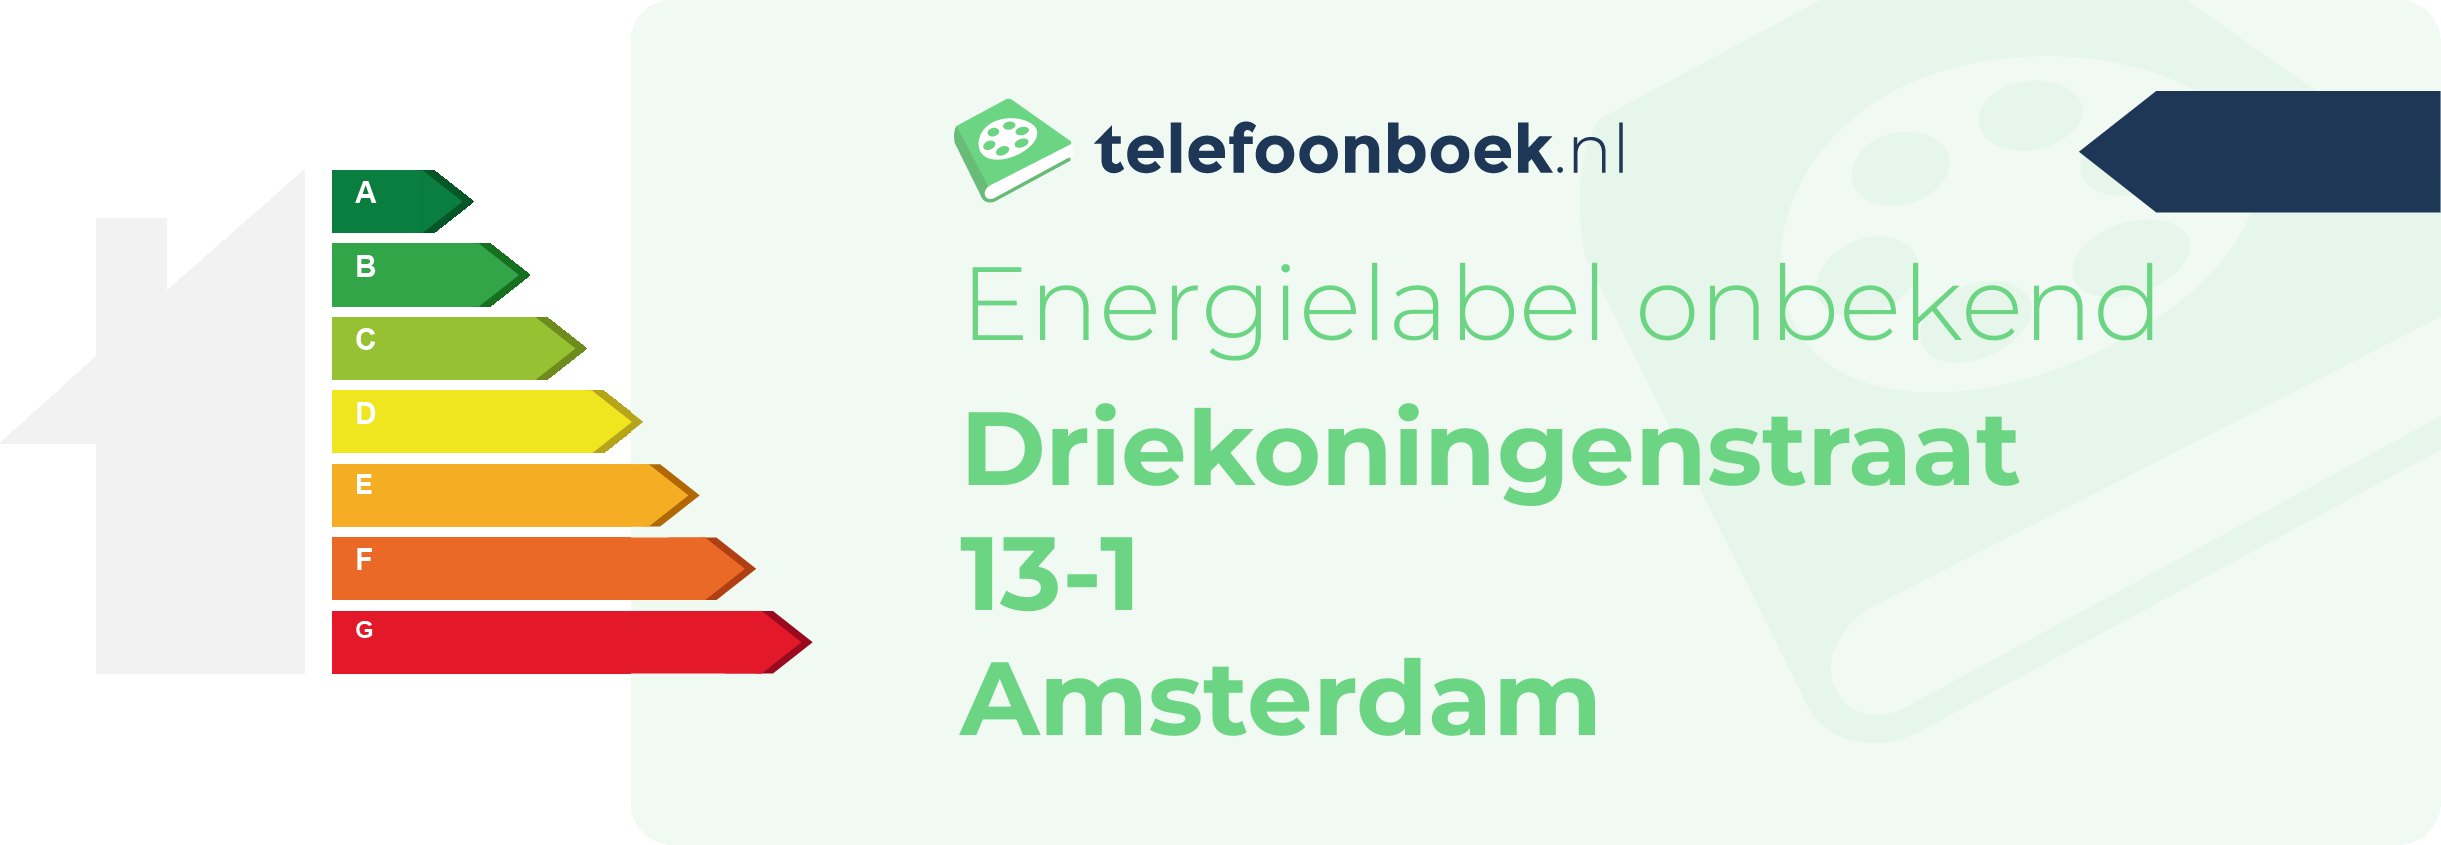 Energielabel Driekoningenstraat 13-1 Amsterdam